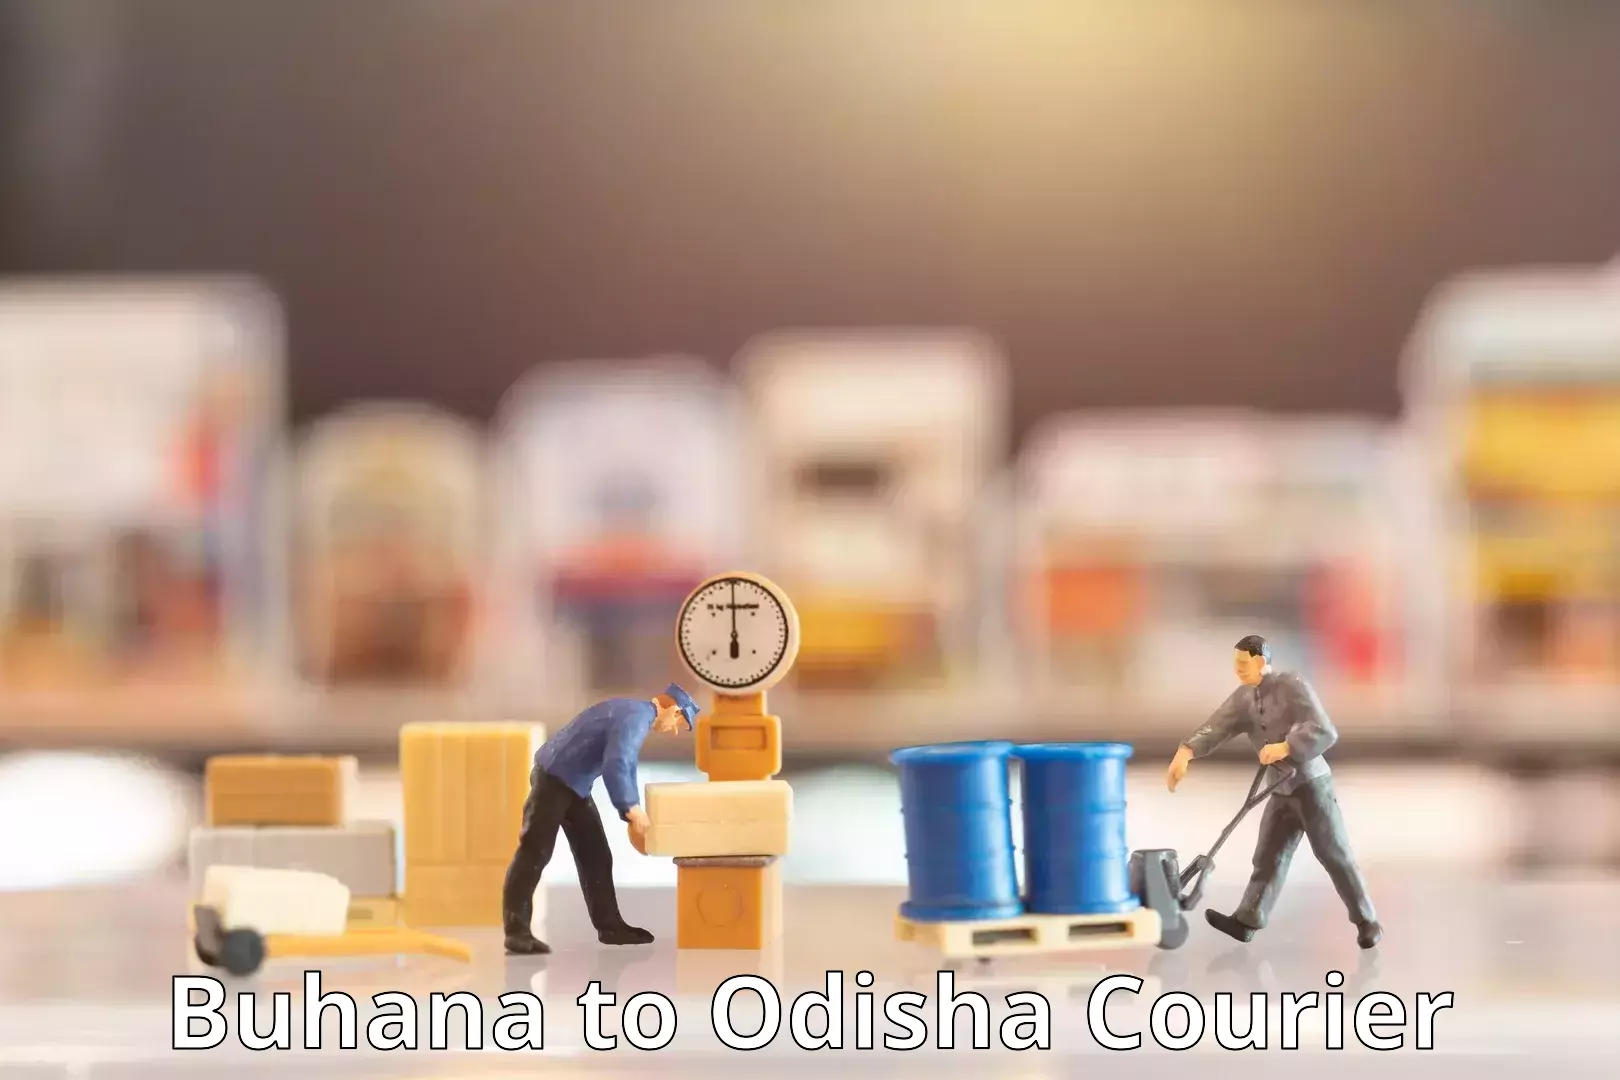 Courier app Buhana to Phulbani